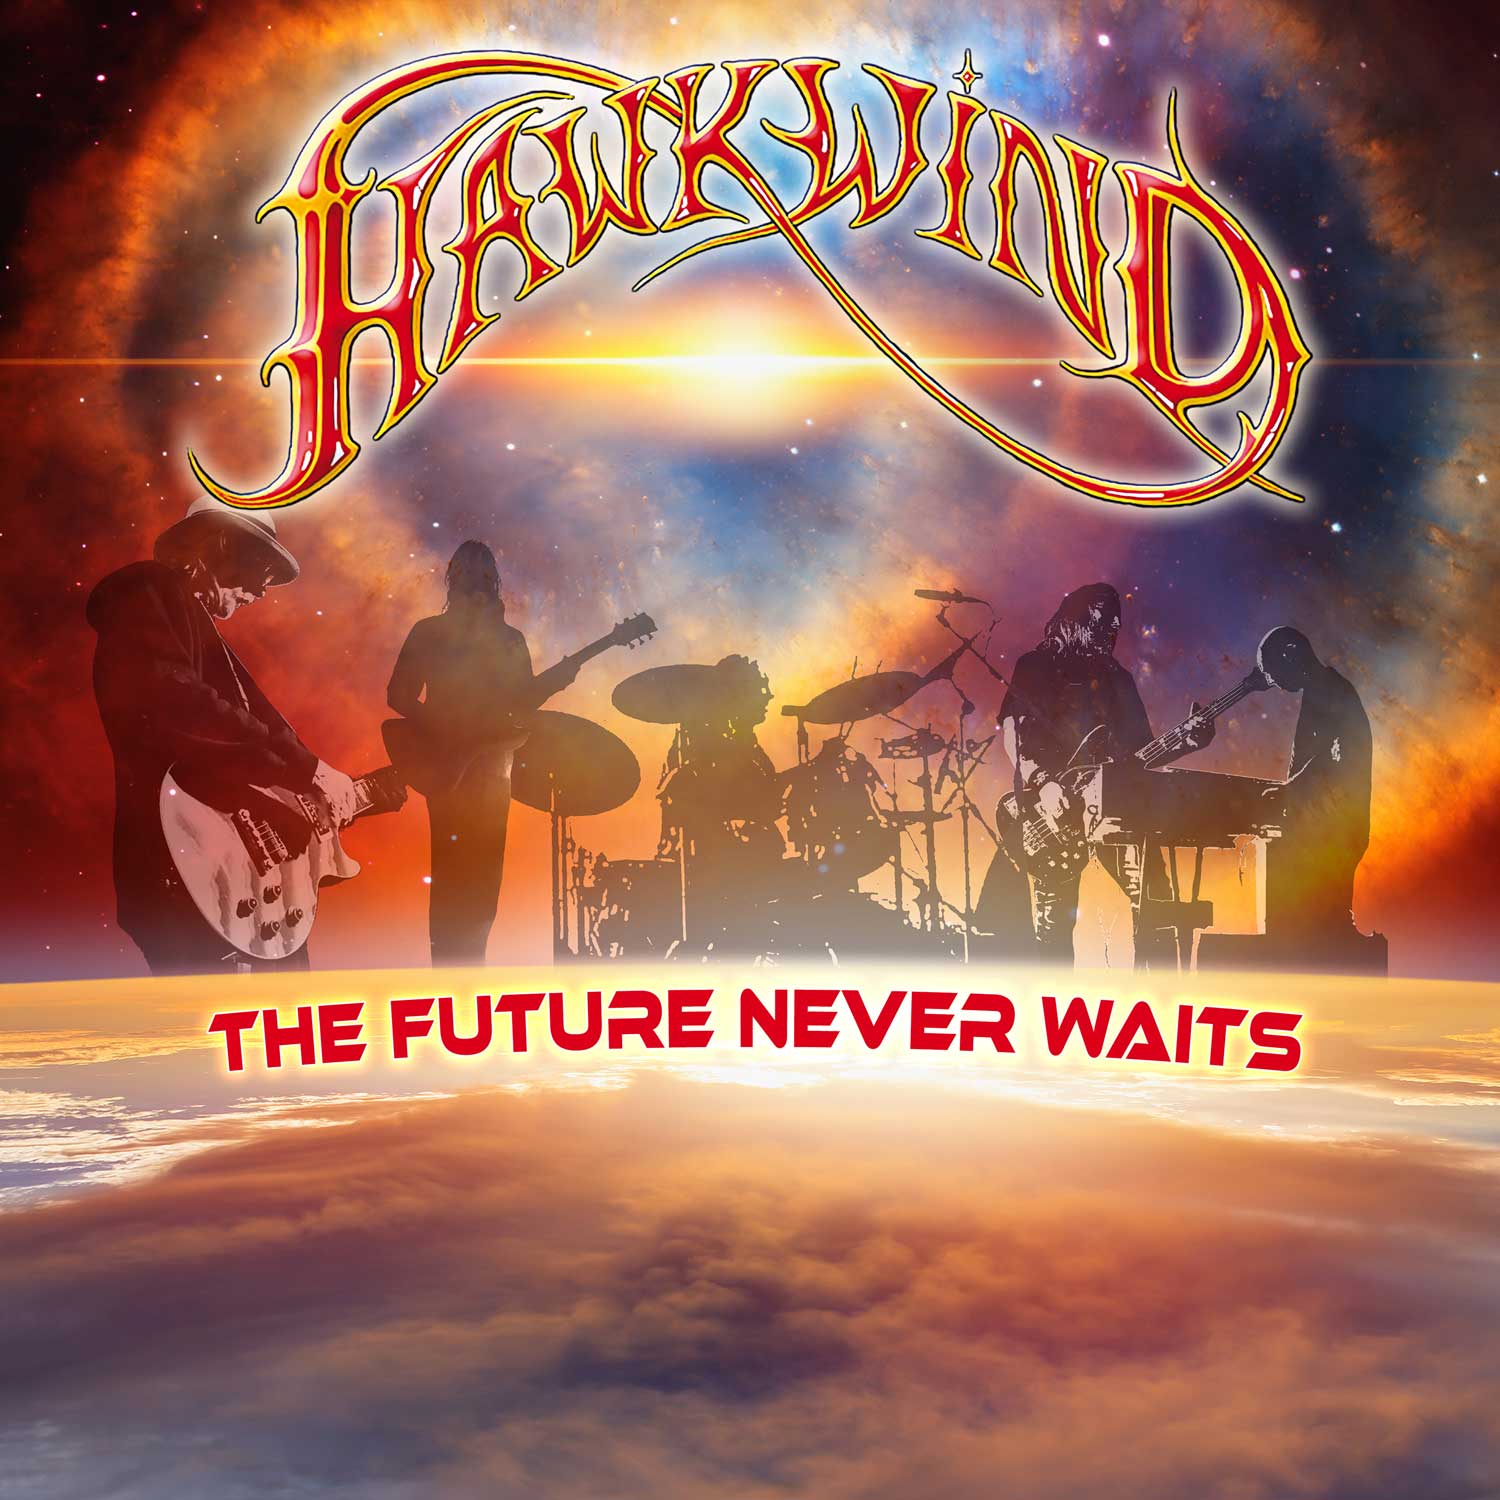 The future never waits - HAWKWIND